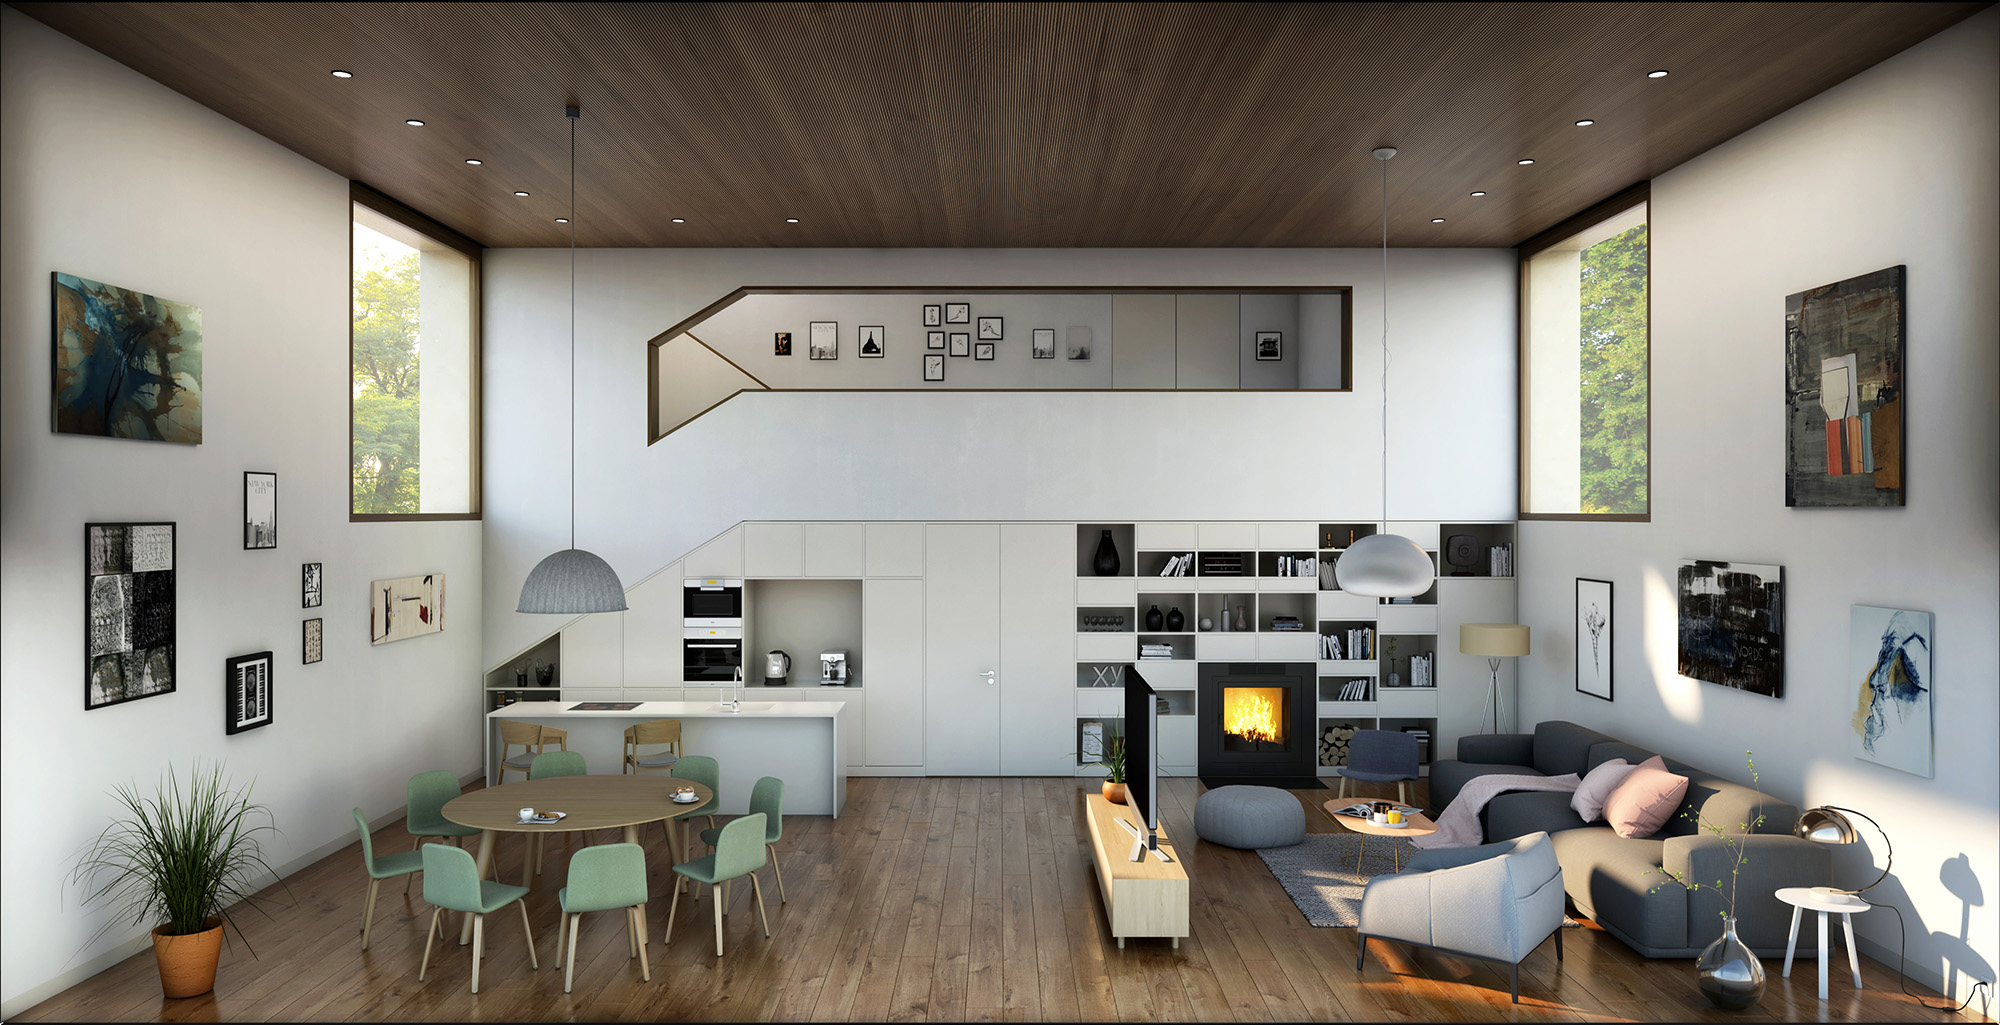 Kuchyň, luxusní, obývací prostor